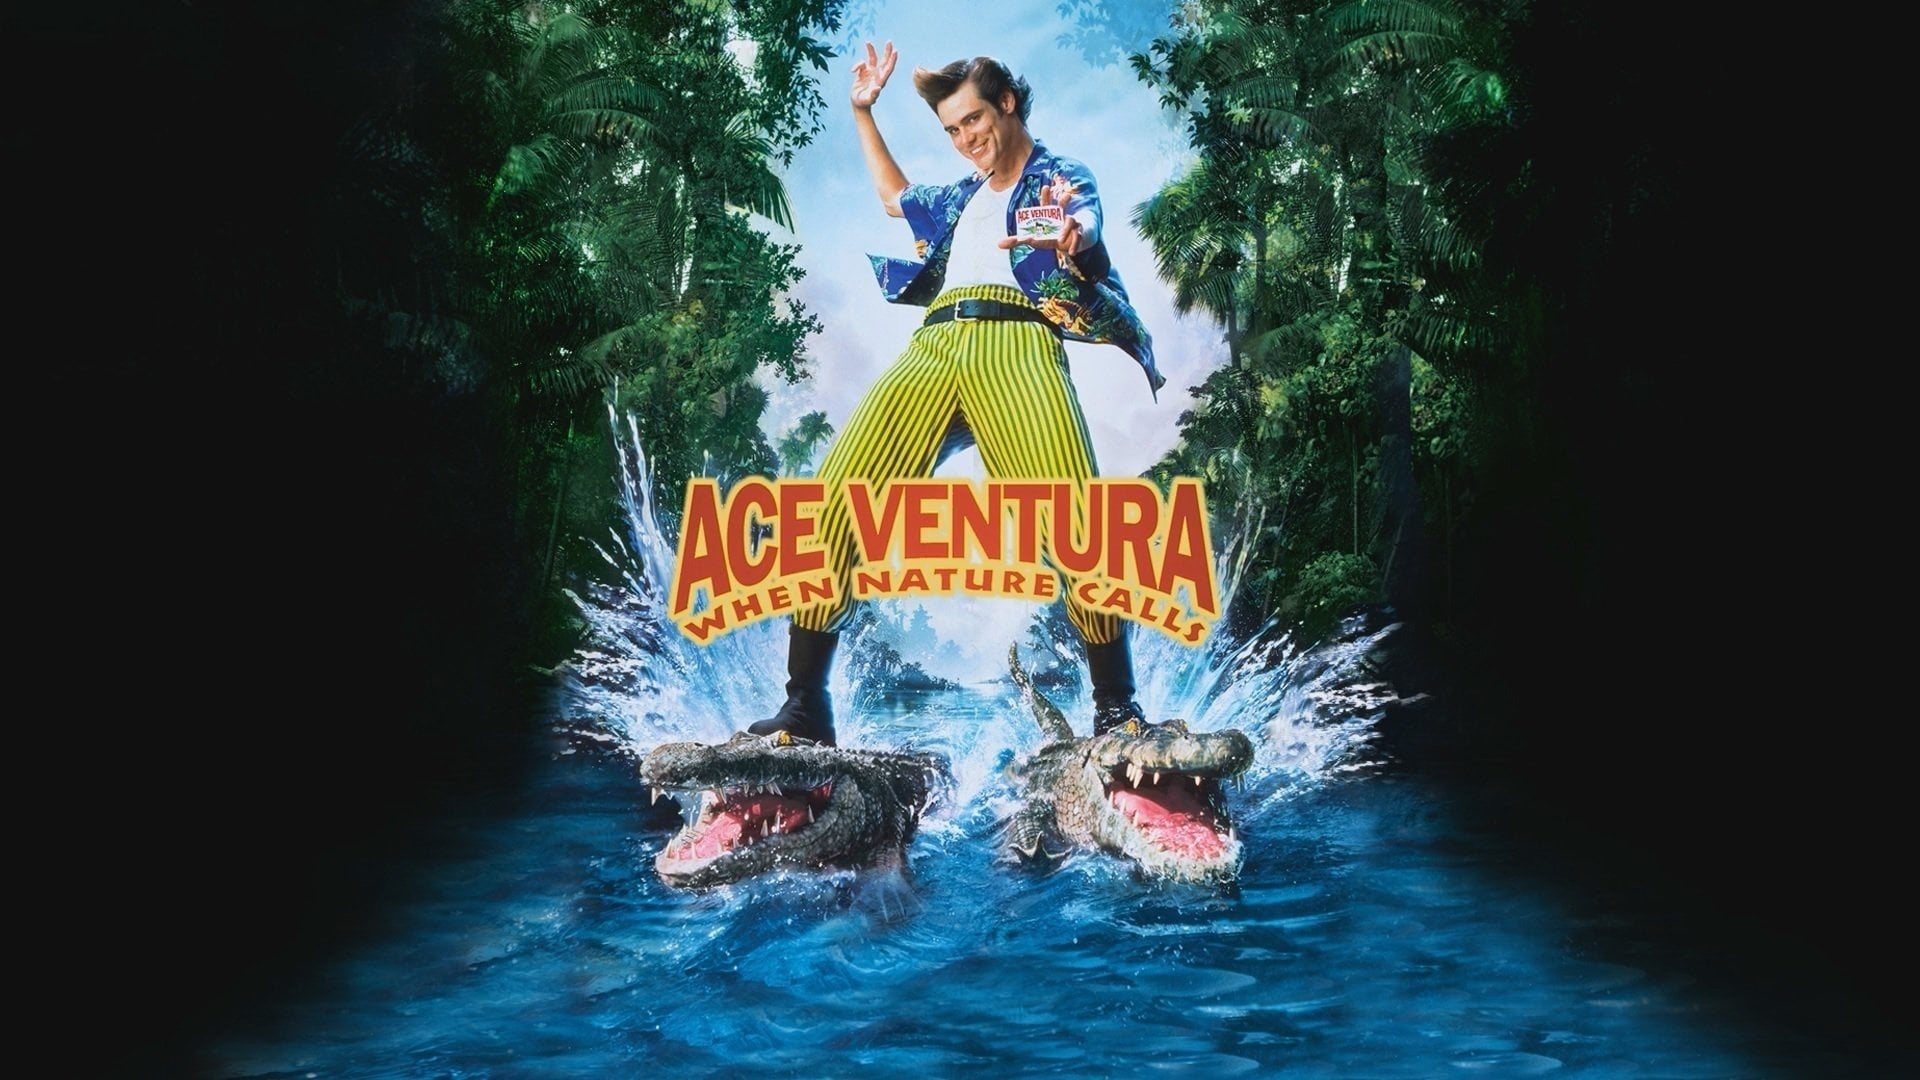 Ace Ventura - den galopperande detektiven rider igen